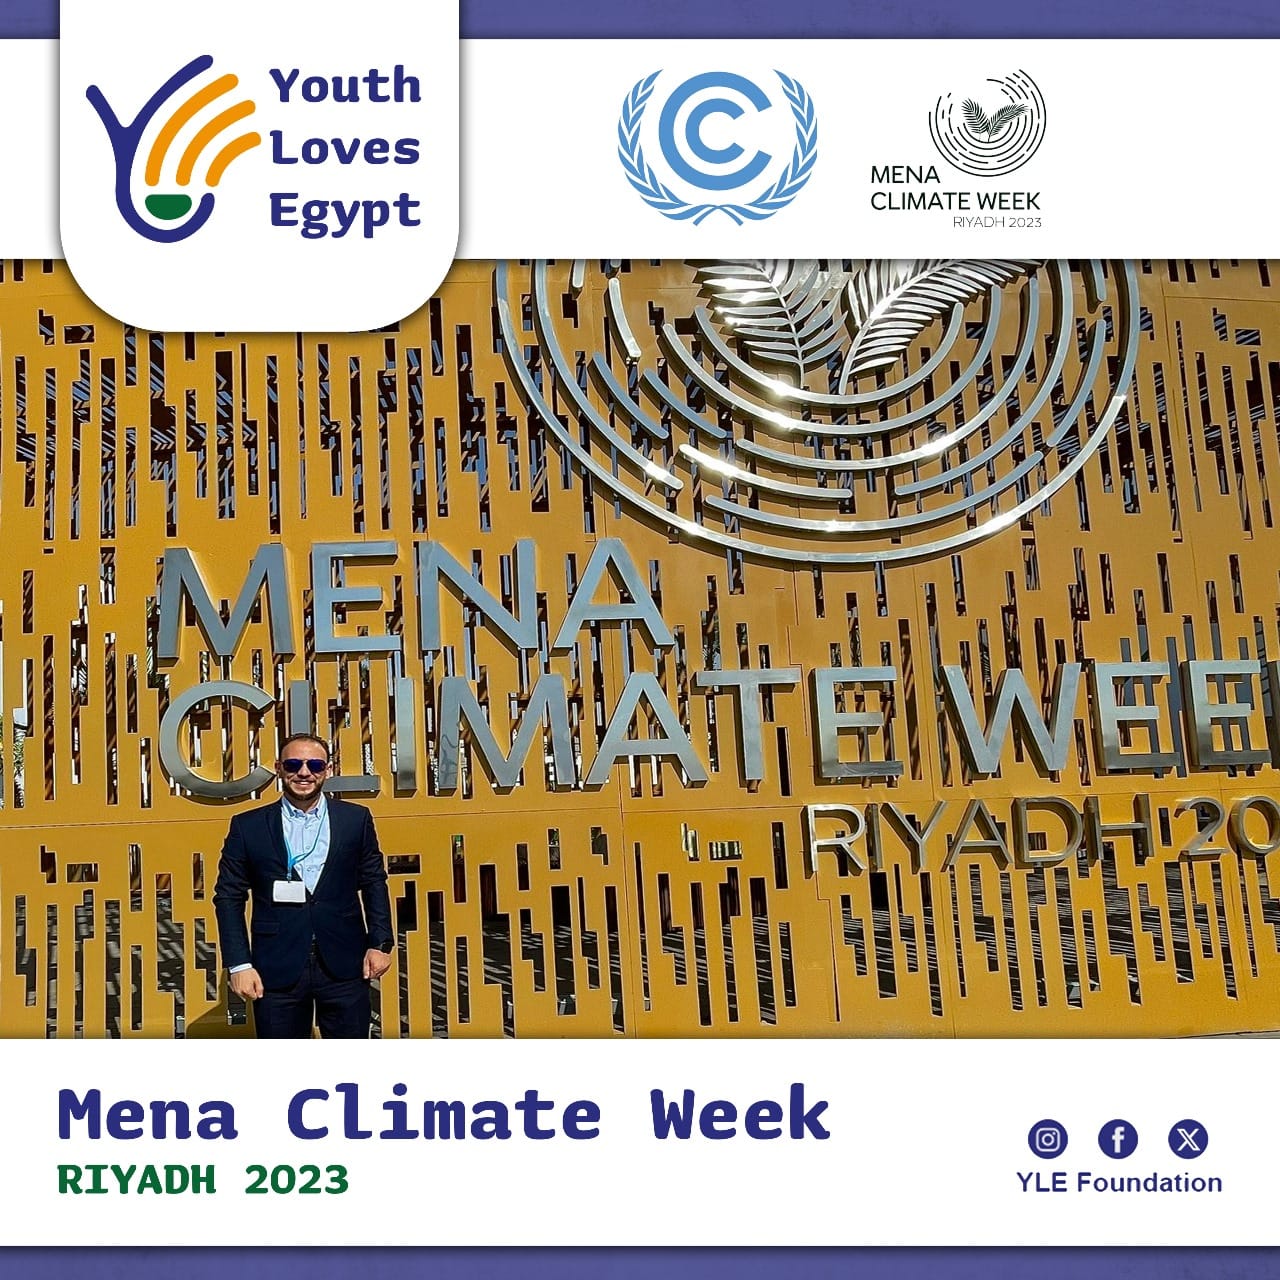 مؤسسة شباب بتحب مصر تشارك في افعاليات اسبوع المناخ للشرق الاوسط 